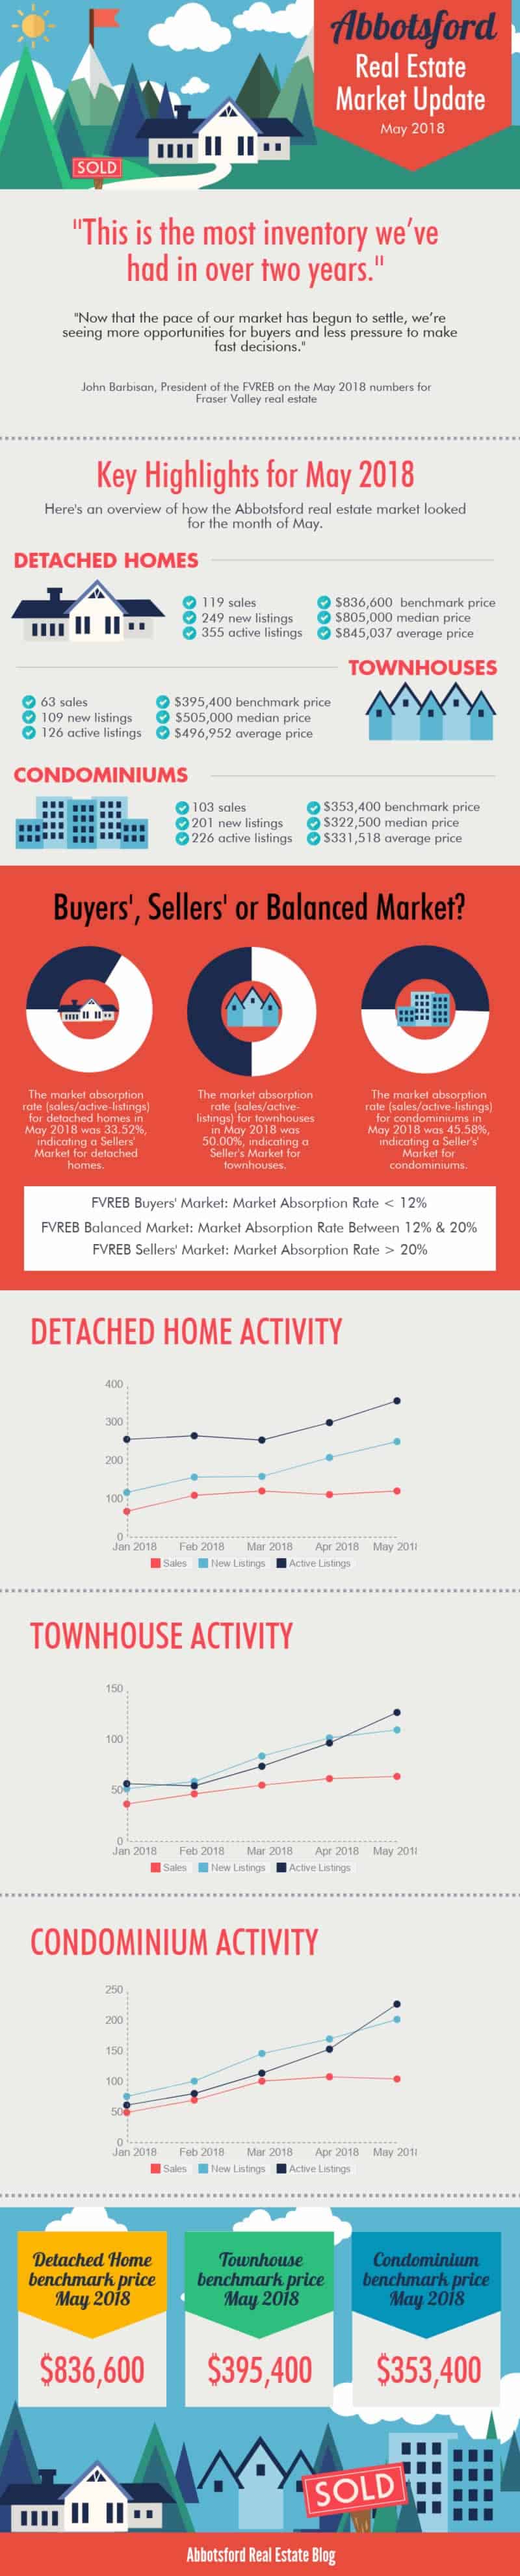 Abbotsford Condominium Market Update May 2018 Infographic